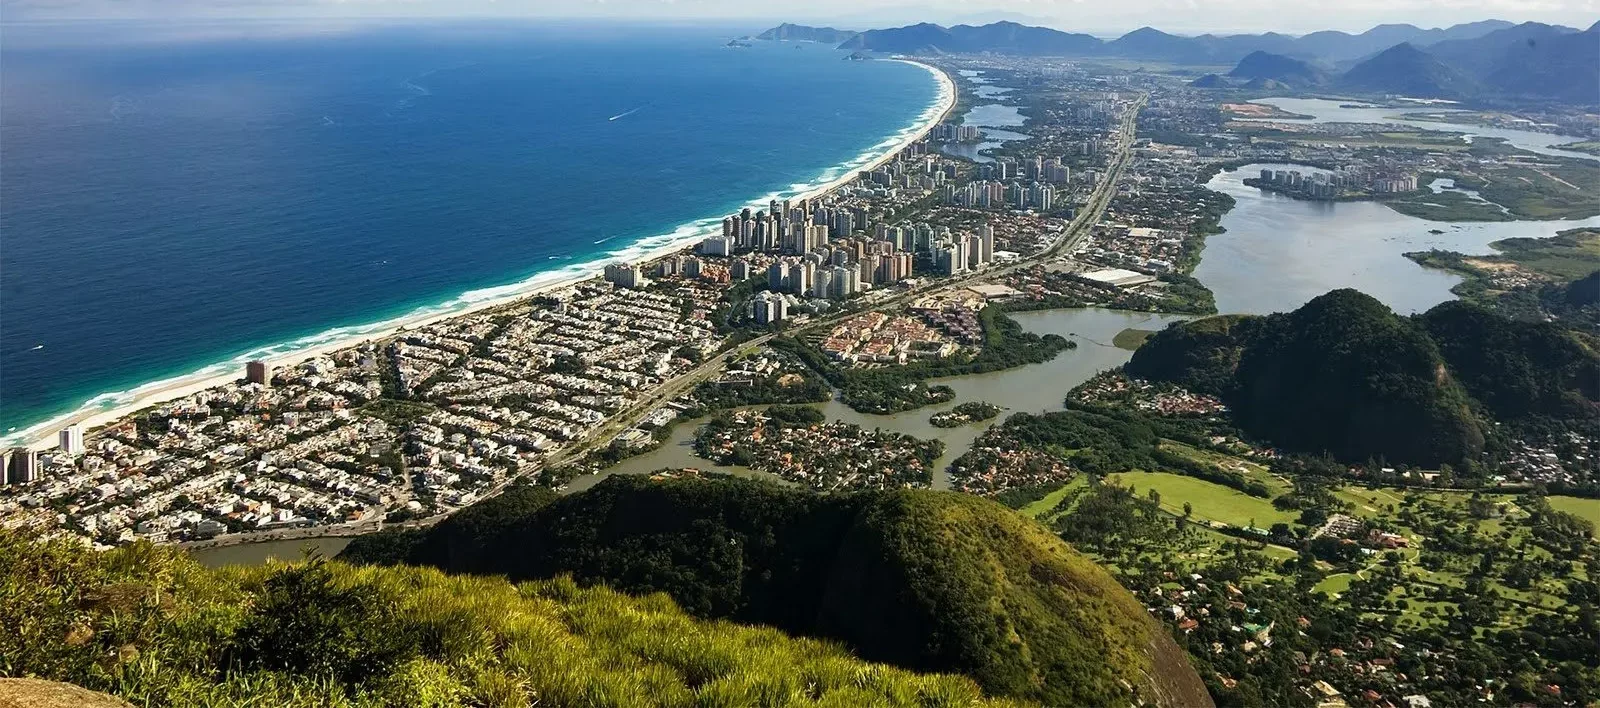 Investindo em imóveis na Barra da Tijuca: guia completo com apartamentos, coberturas, casas em condomínios fechados e terrenos.